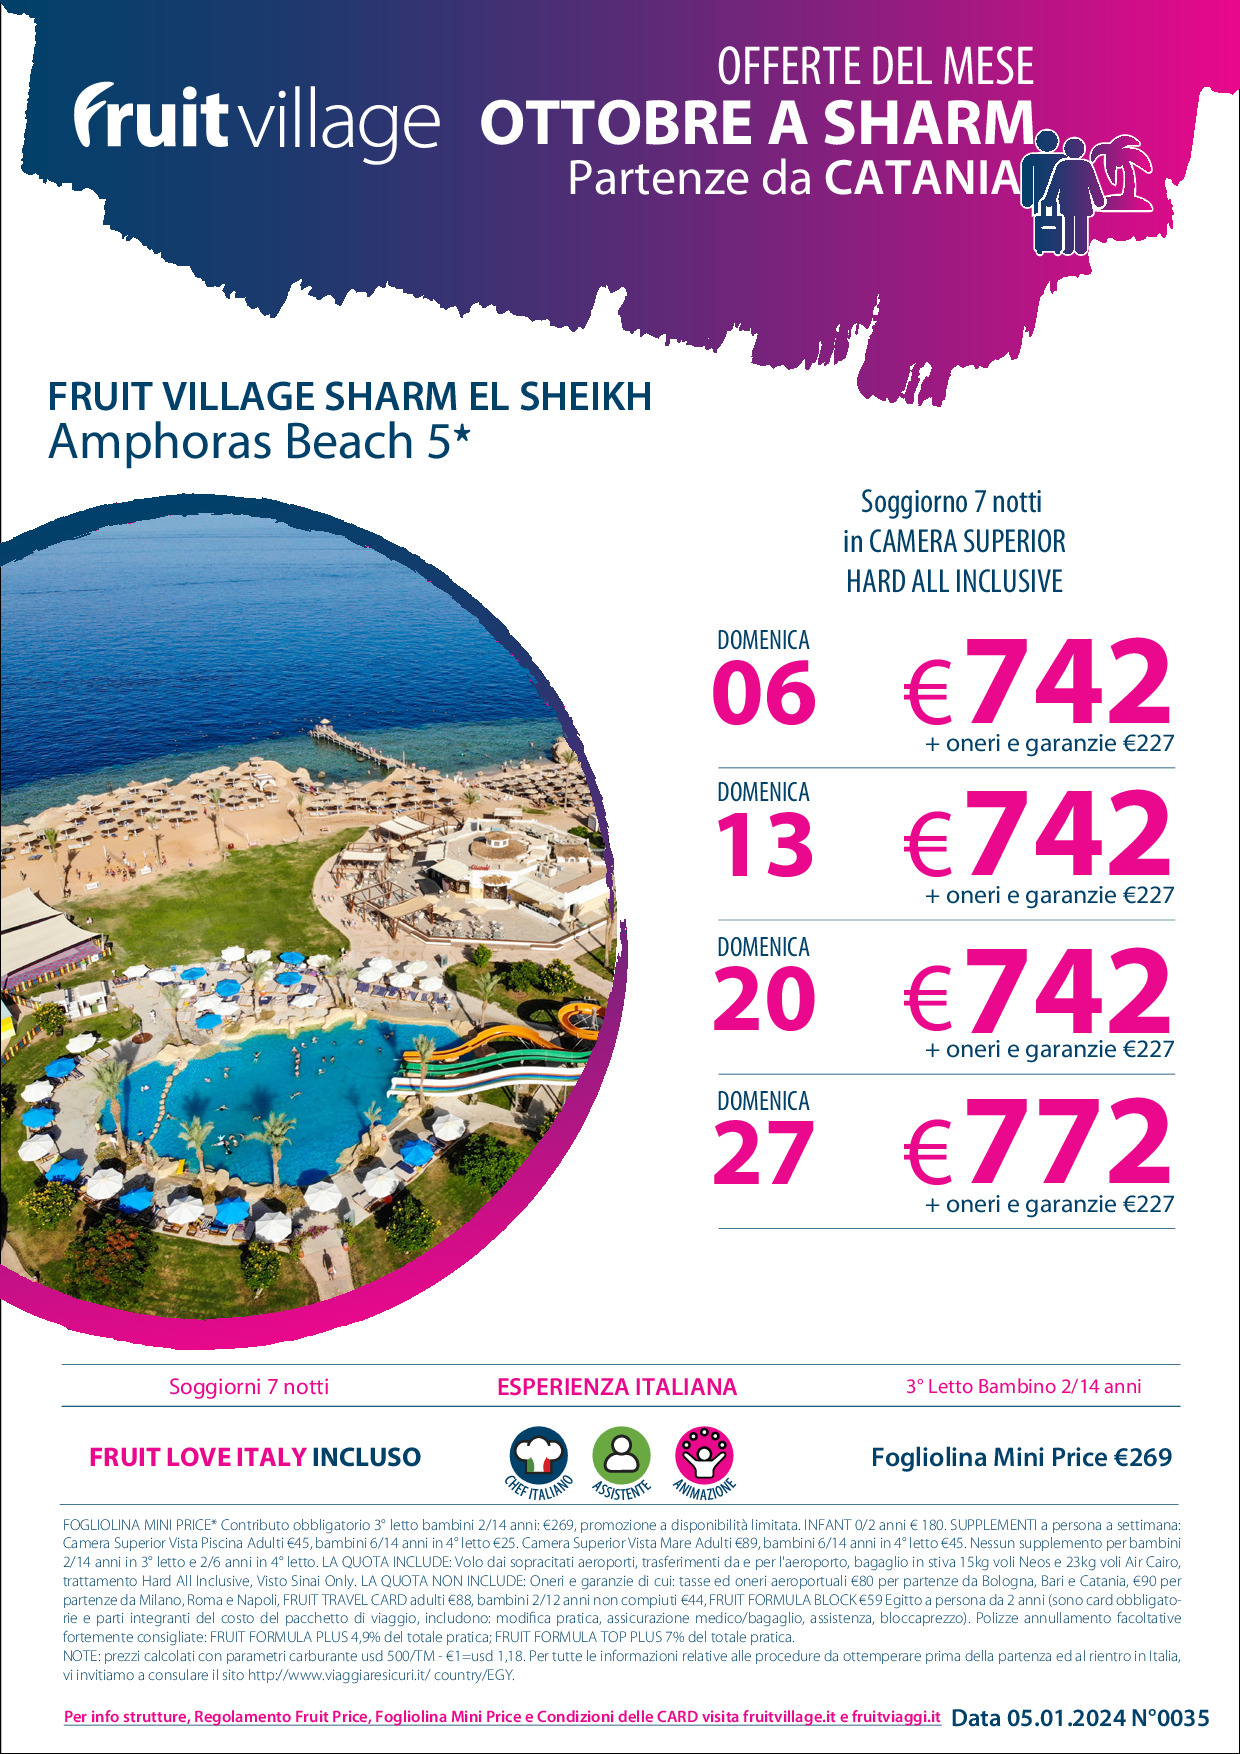 FRUIT VILLAGE Sharm el Sheikh Amphoras Beach - da Catania ad Ottobre